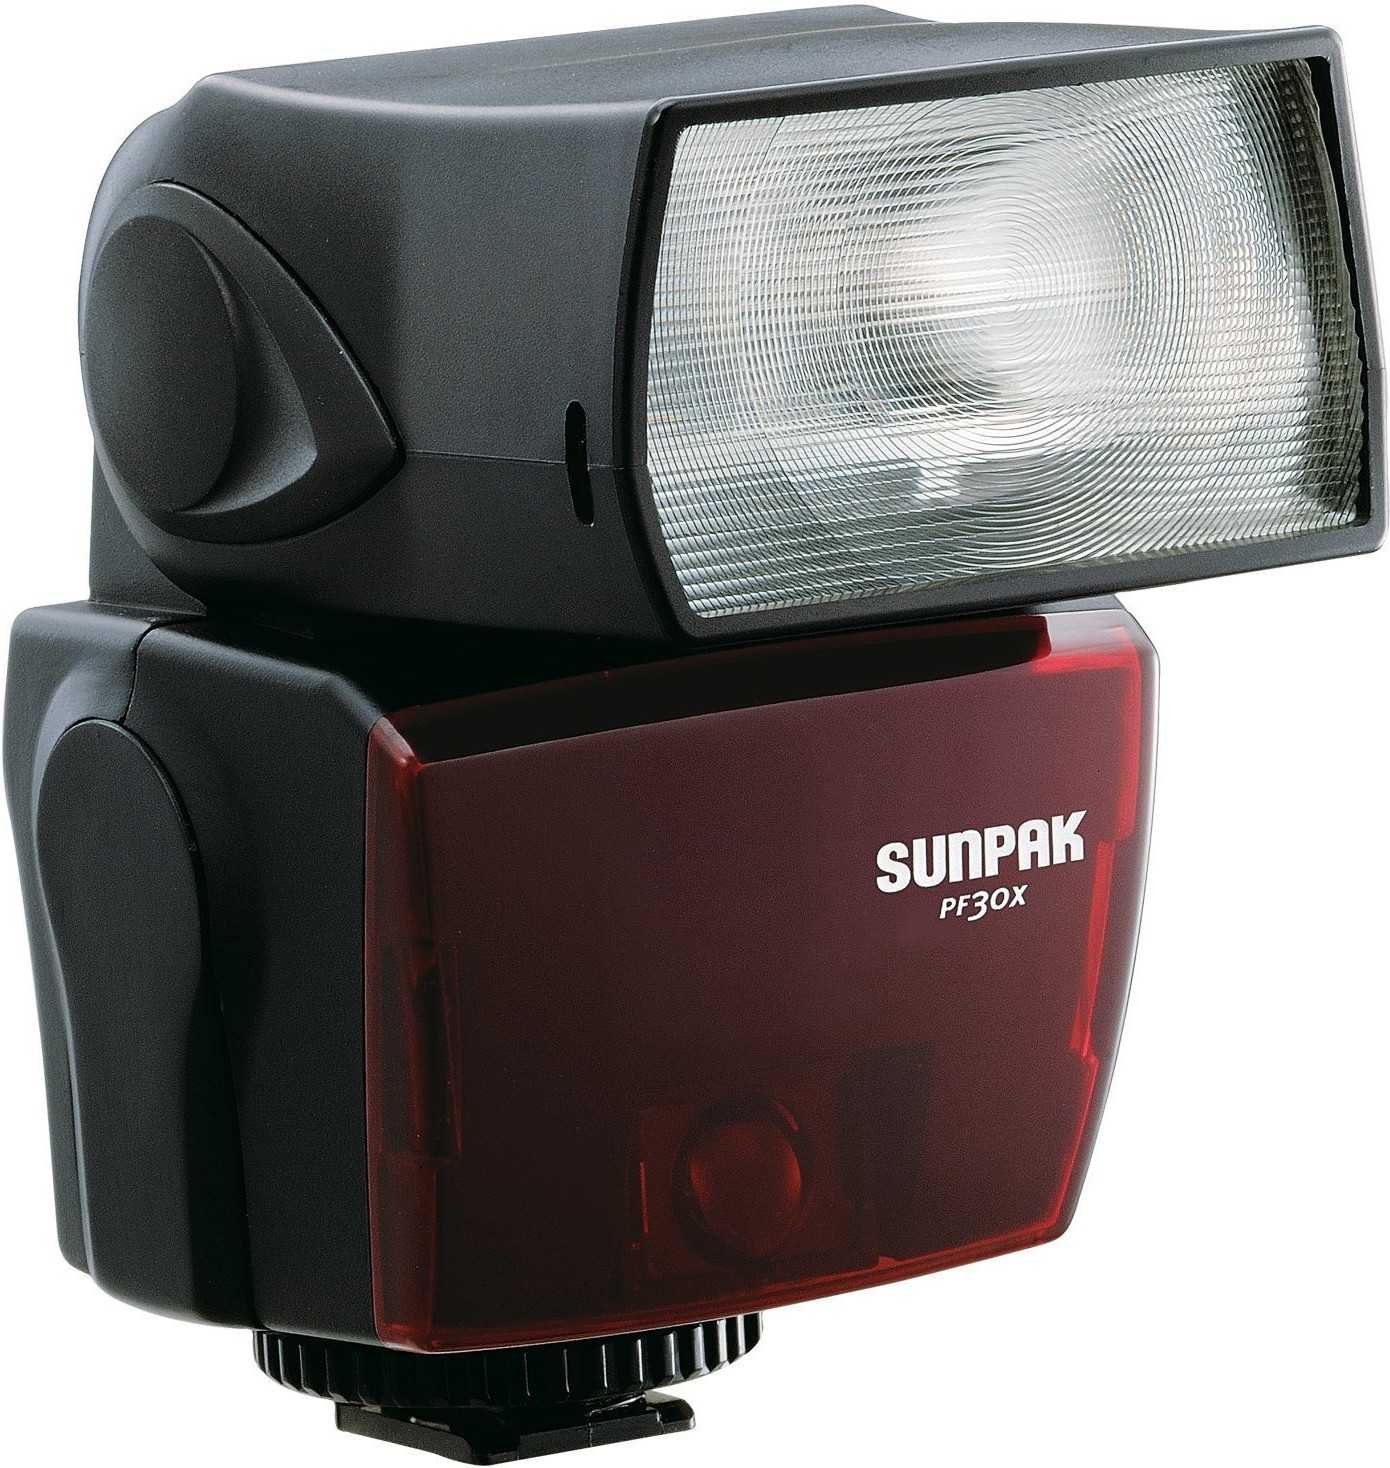 Sunpak pf30x for canon - купить , скидки, цена, отзывы, обзор, характеристики - вспышки для фотоаппаратов